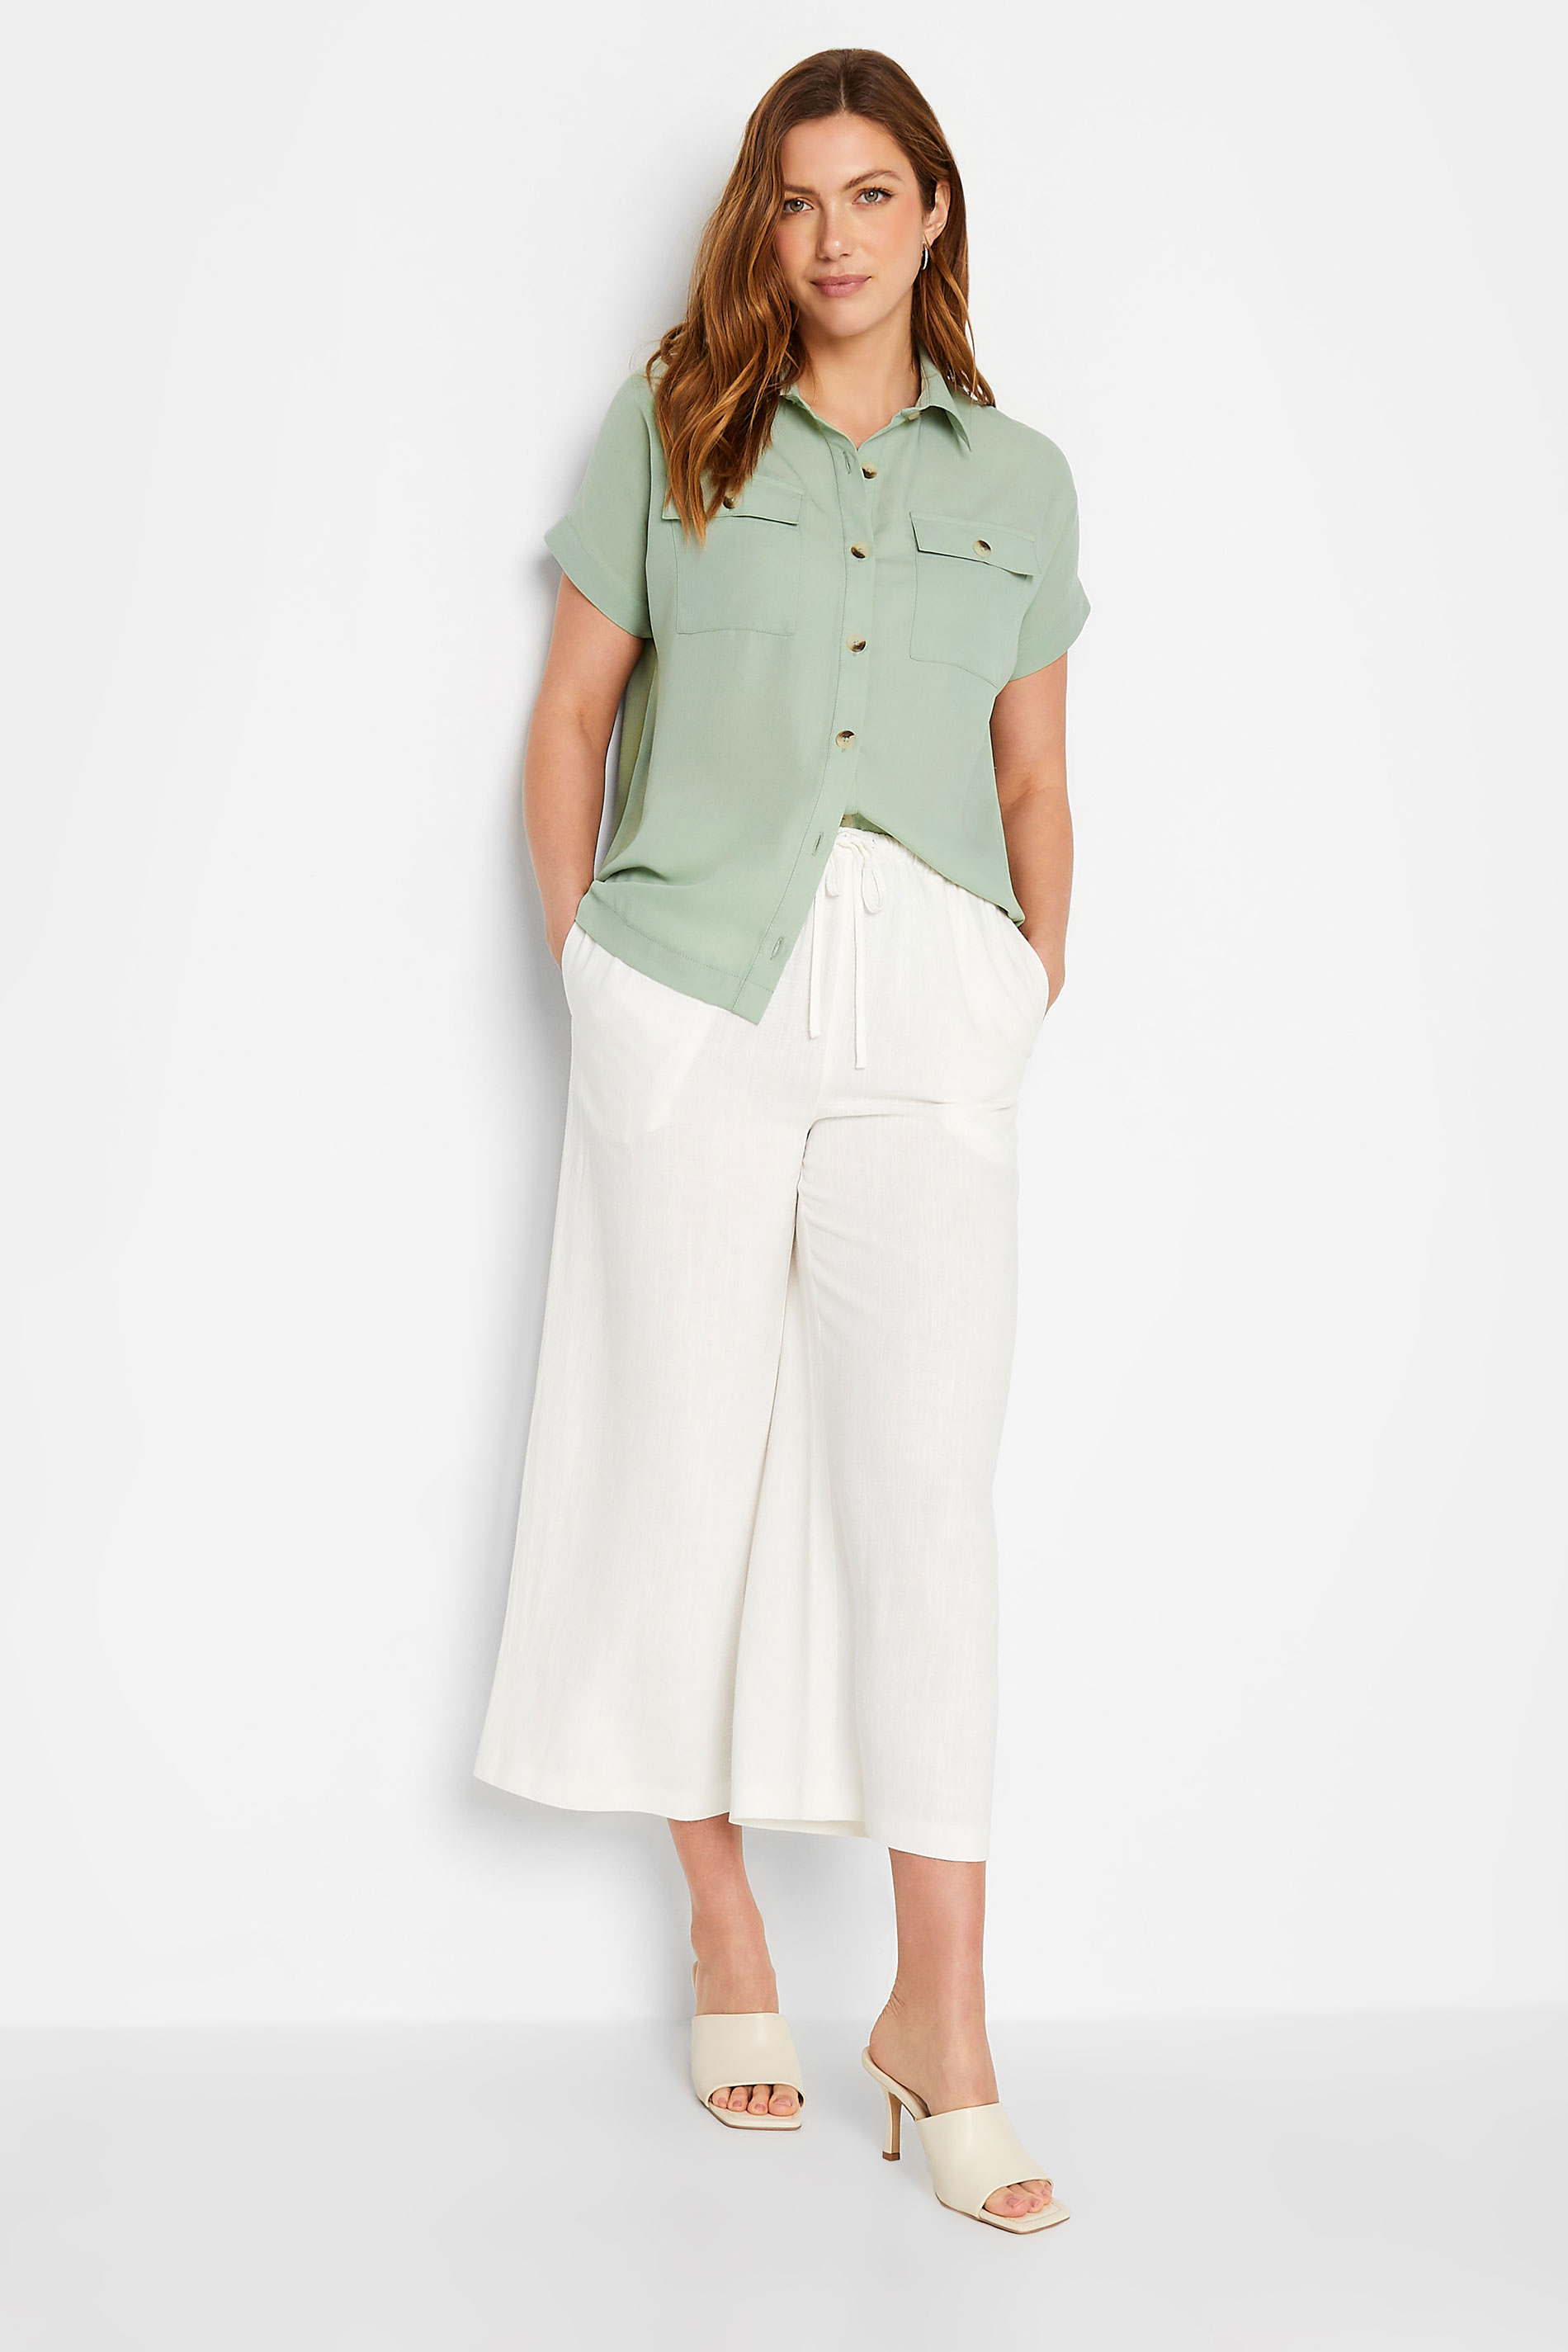 LTS Tall Women's Green Pocket Utility Shirt | Long Tall Sally 2